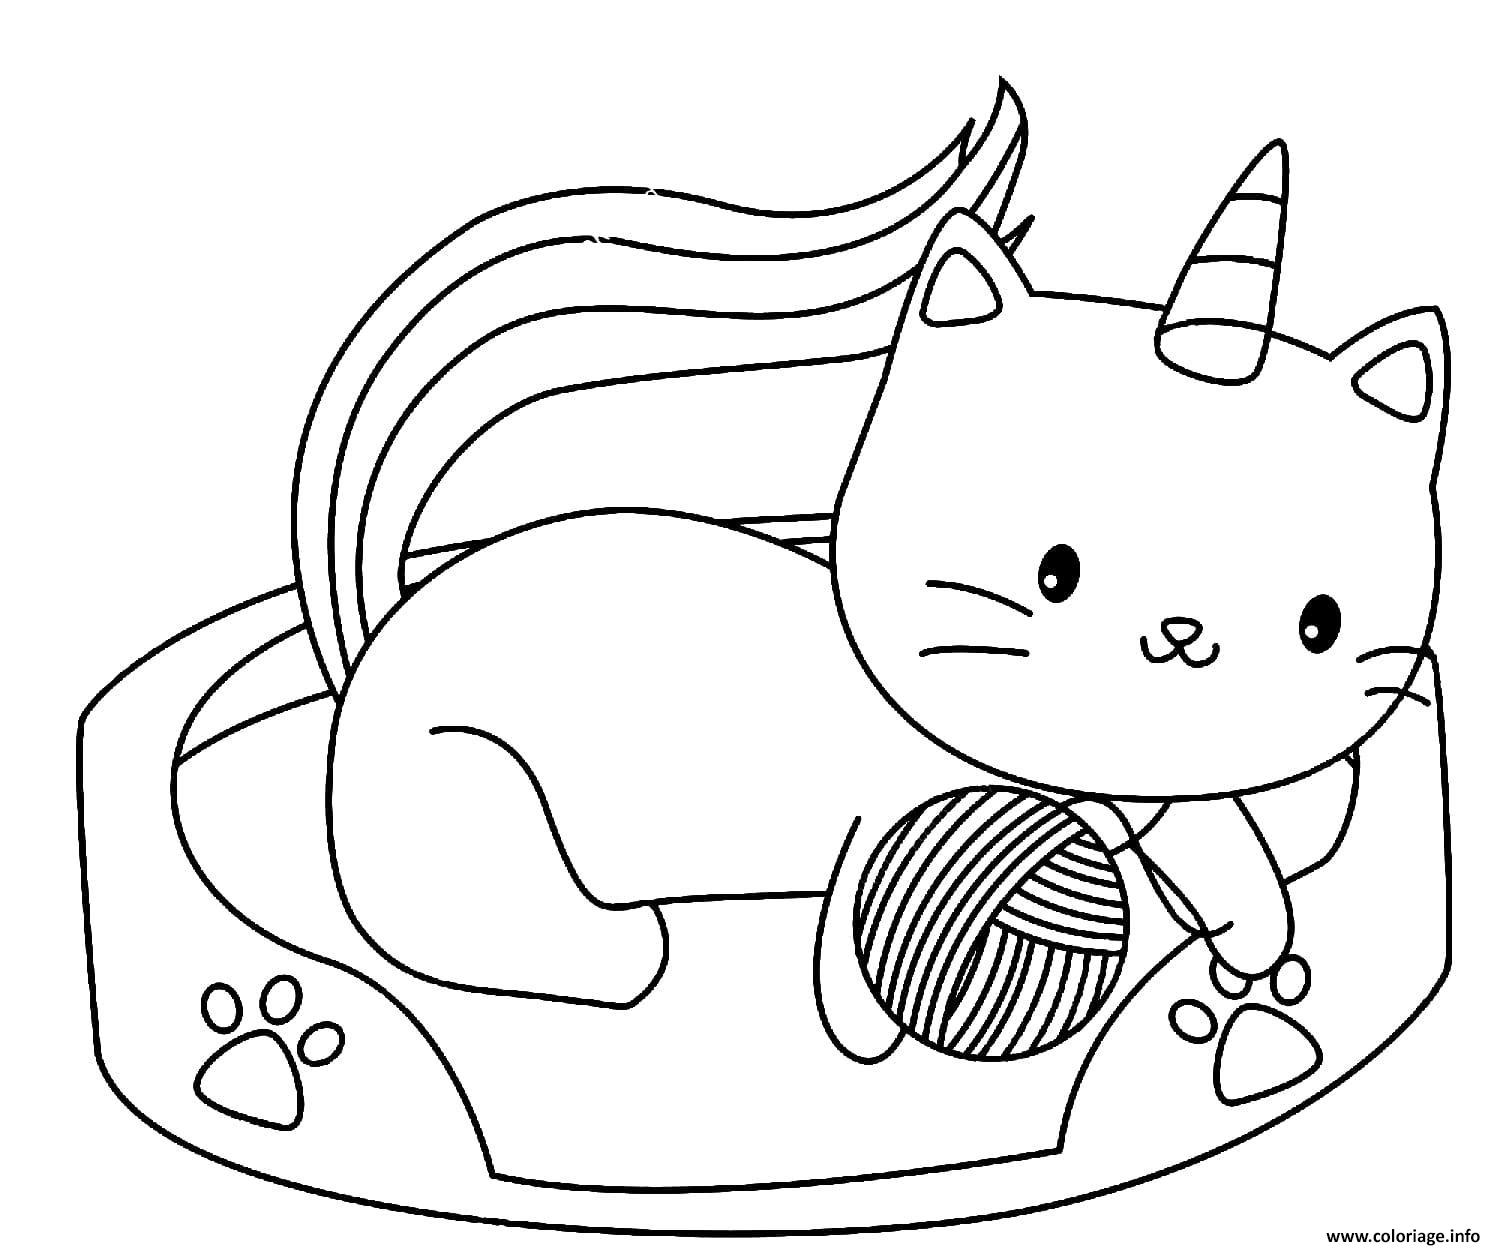 Dessin bebe chat licorne Coloriage Gratuit à Imprimer